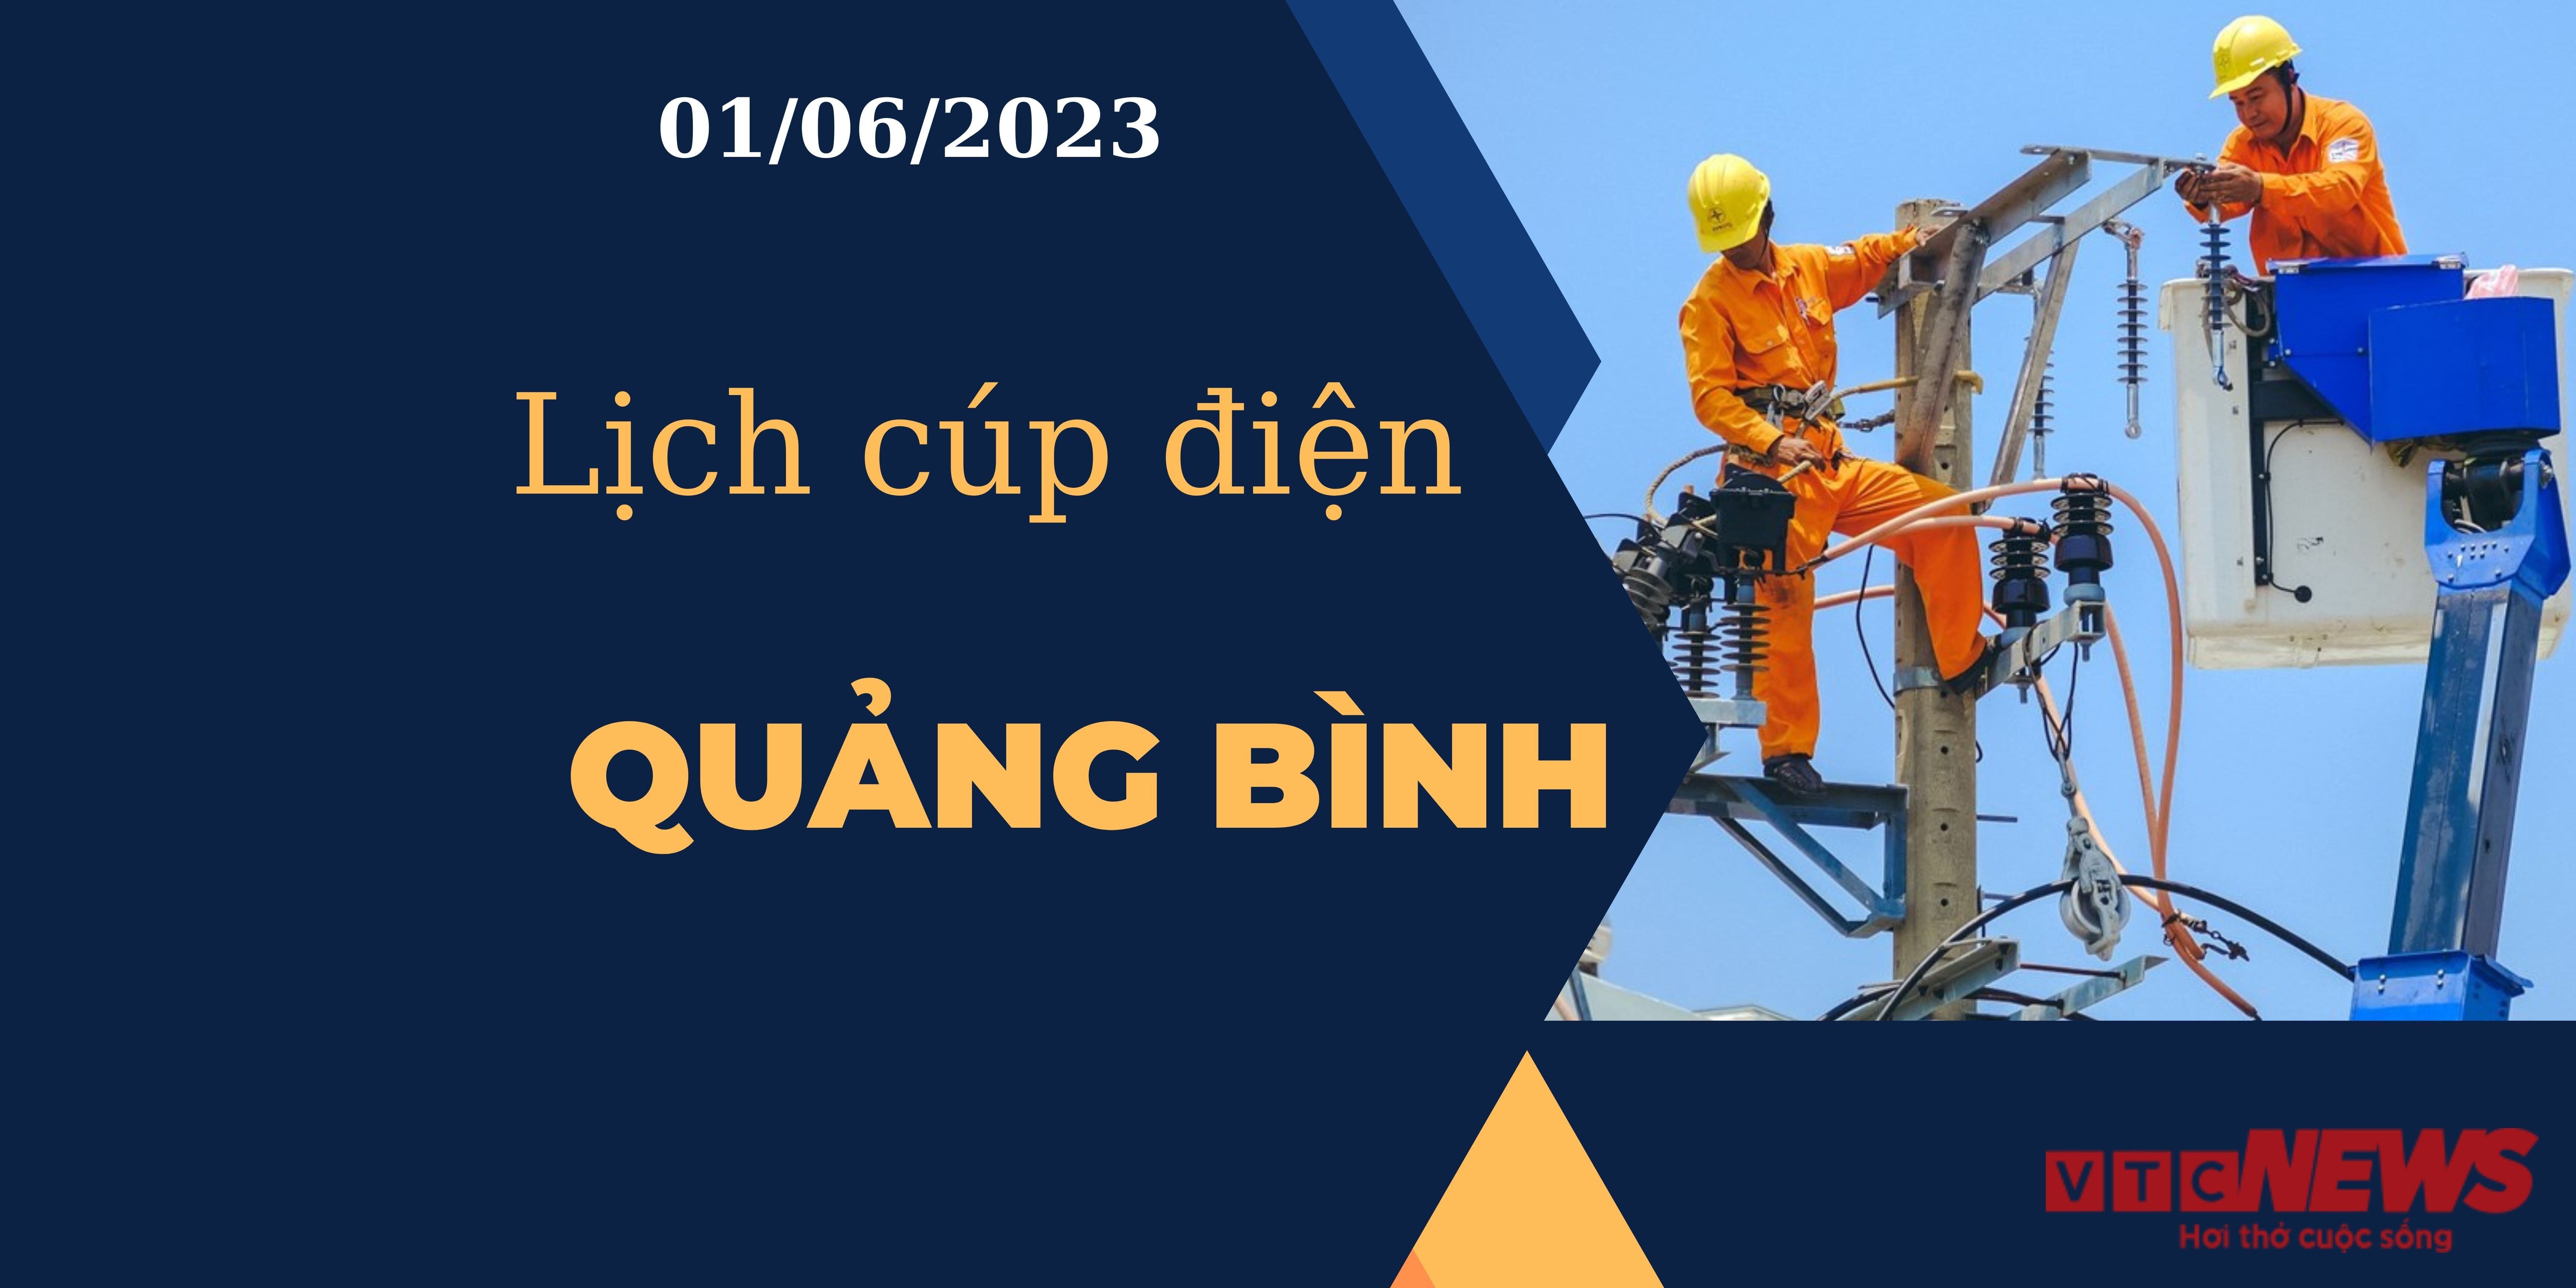 Lịch cúp điện hôm nay tại Quảng Bình ngày 01/06/2023 - 1